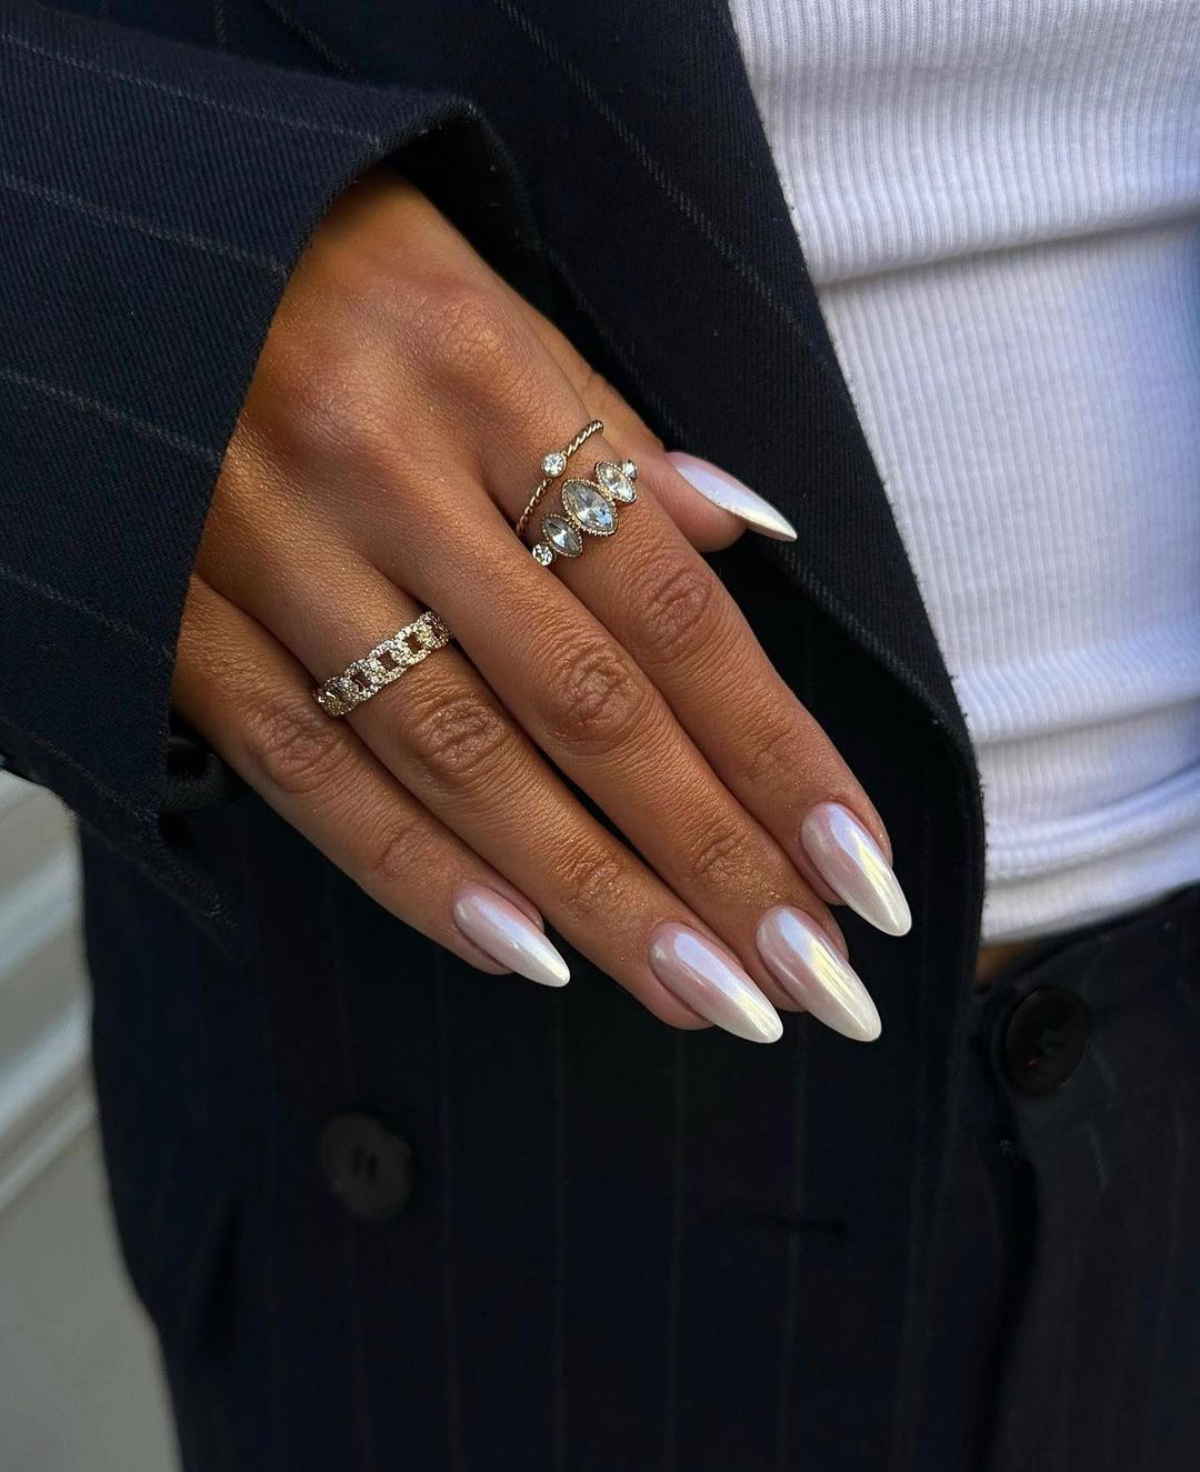 shiny white nails